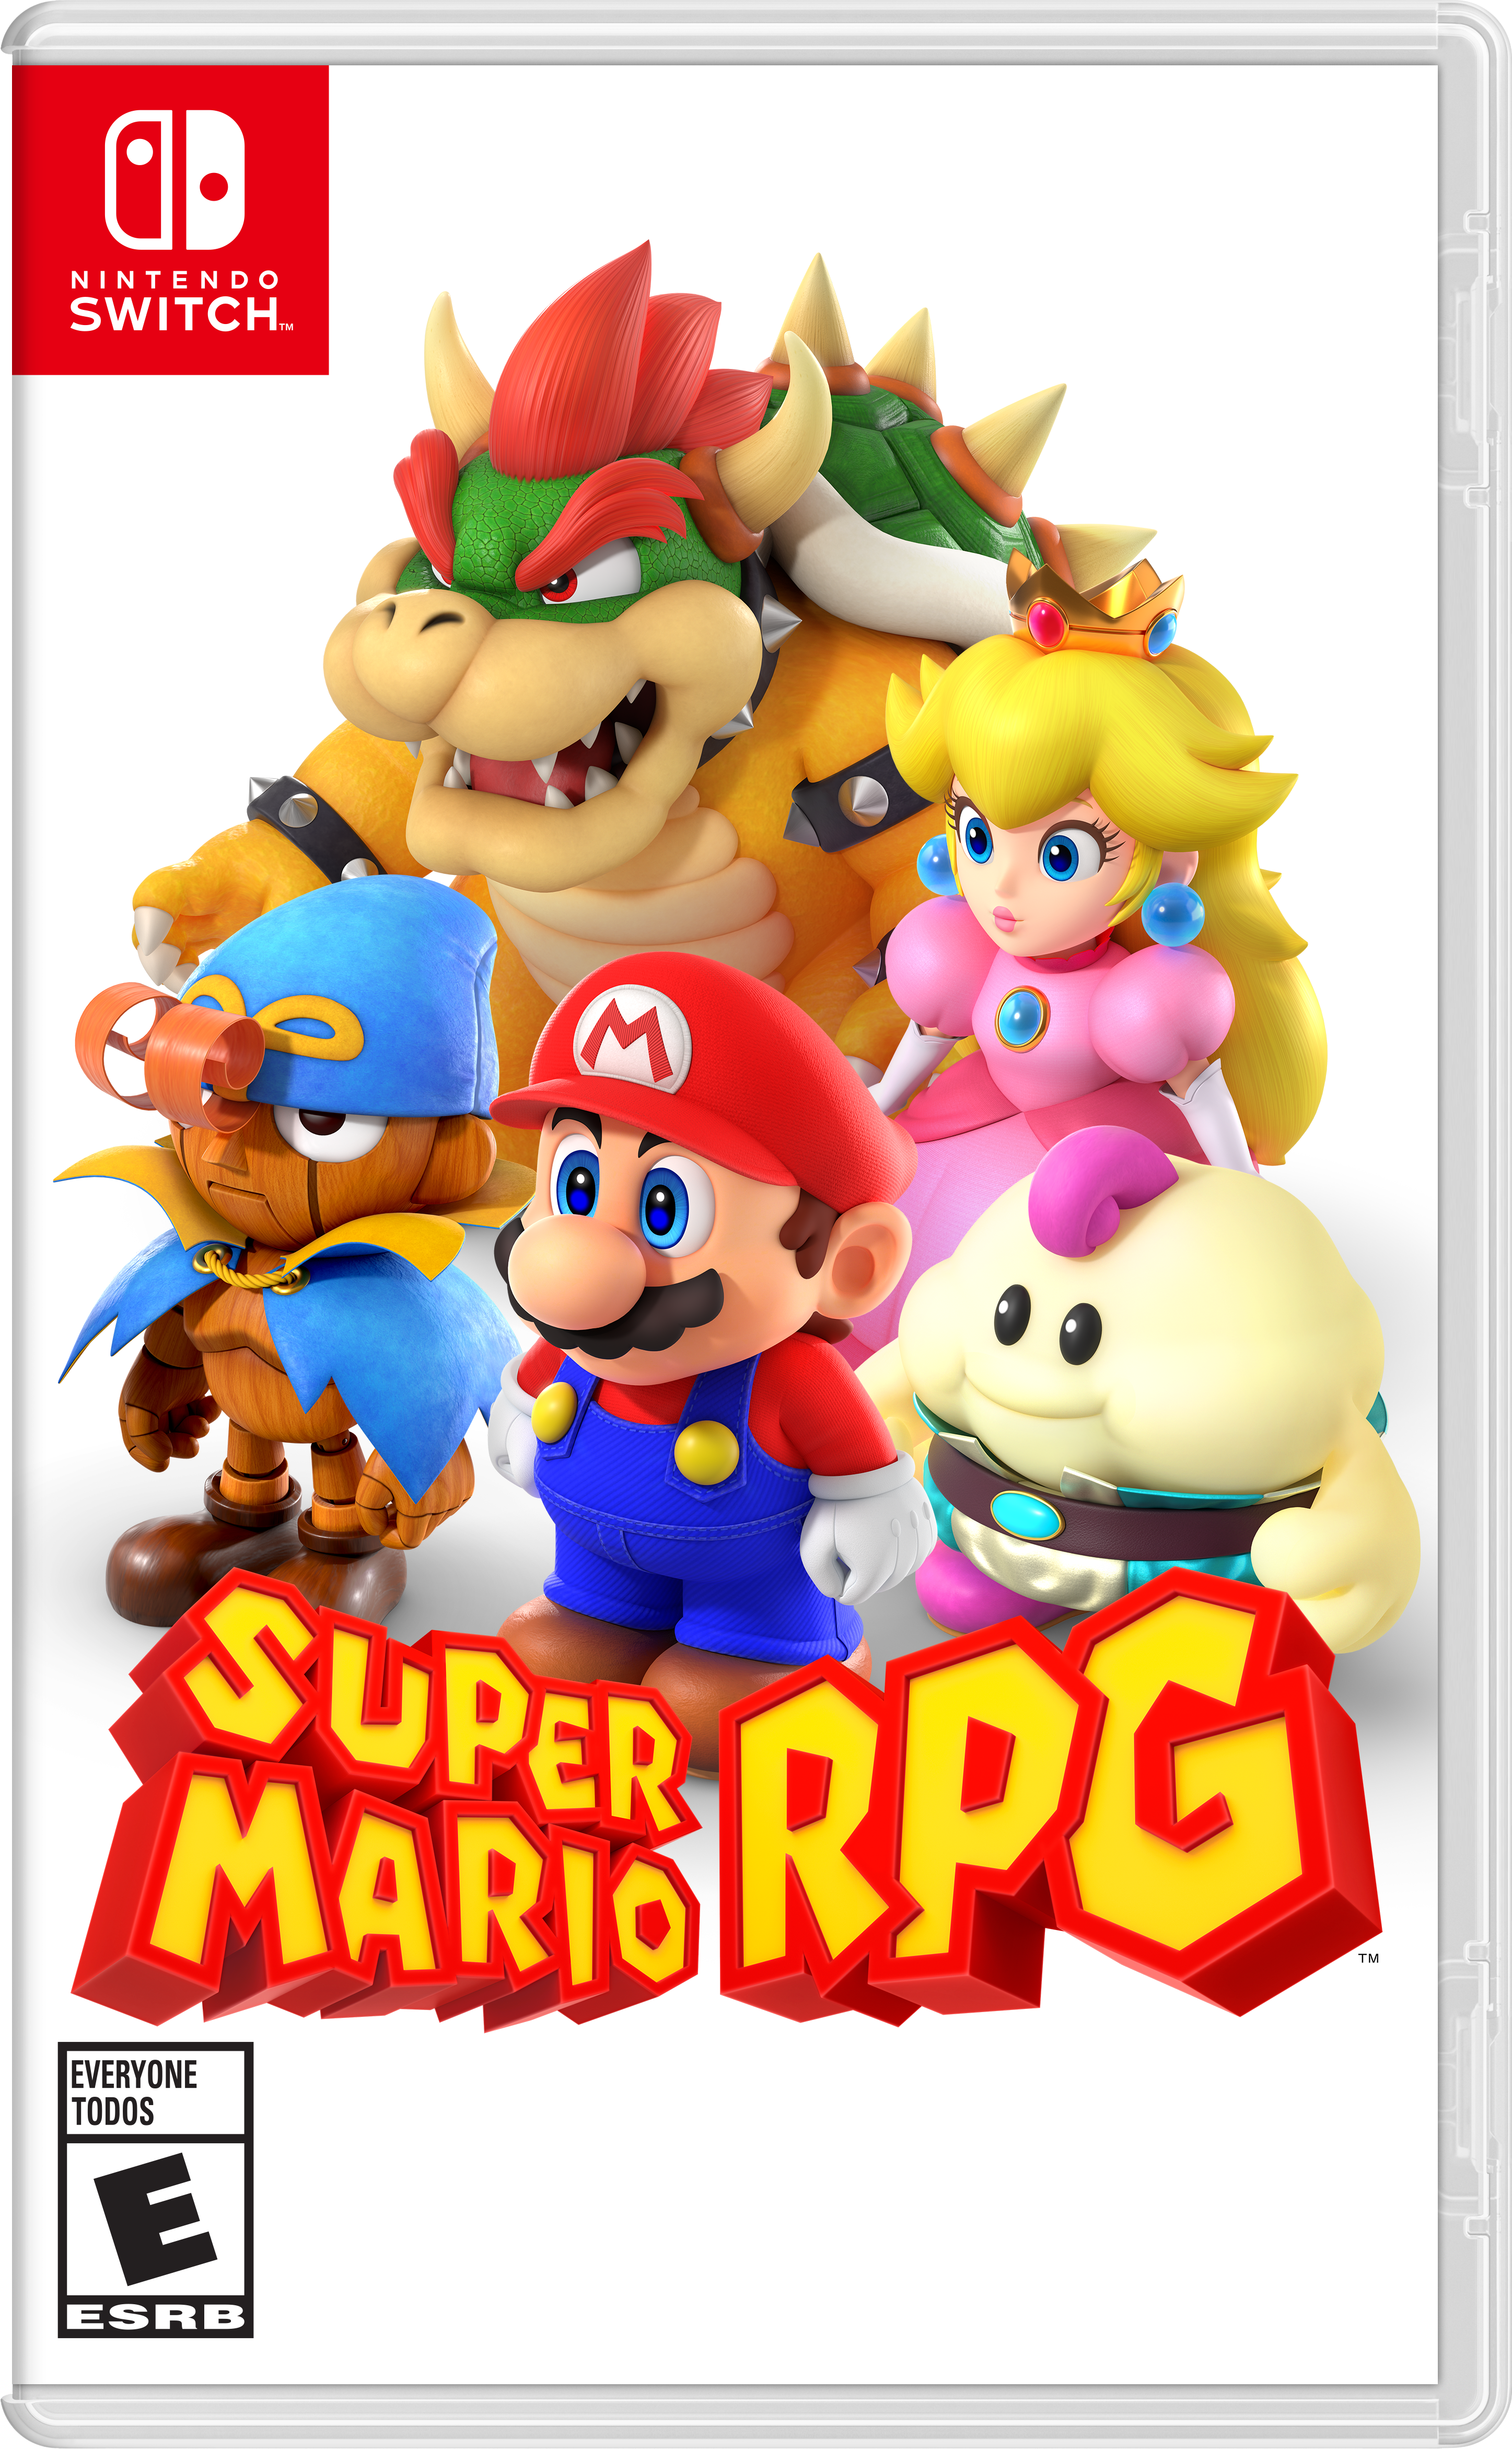 Super-Mario-RPG-Boxart.png